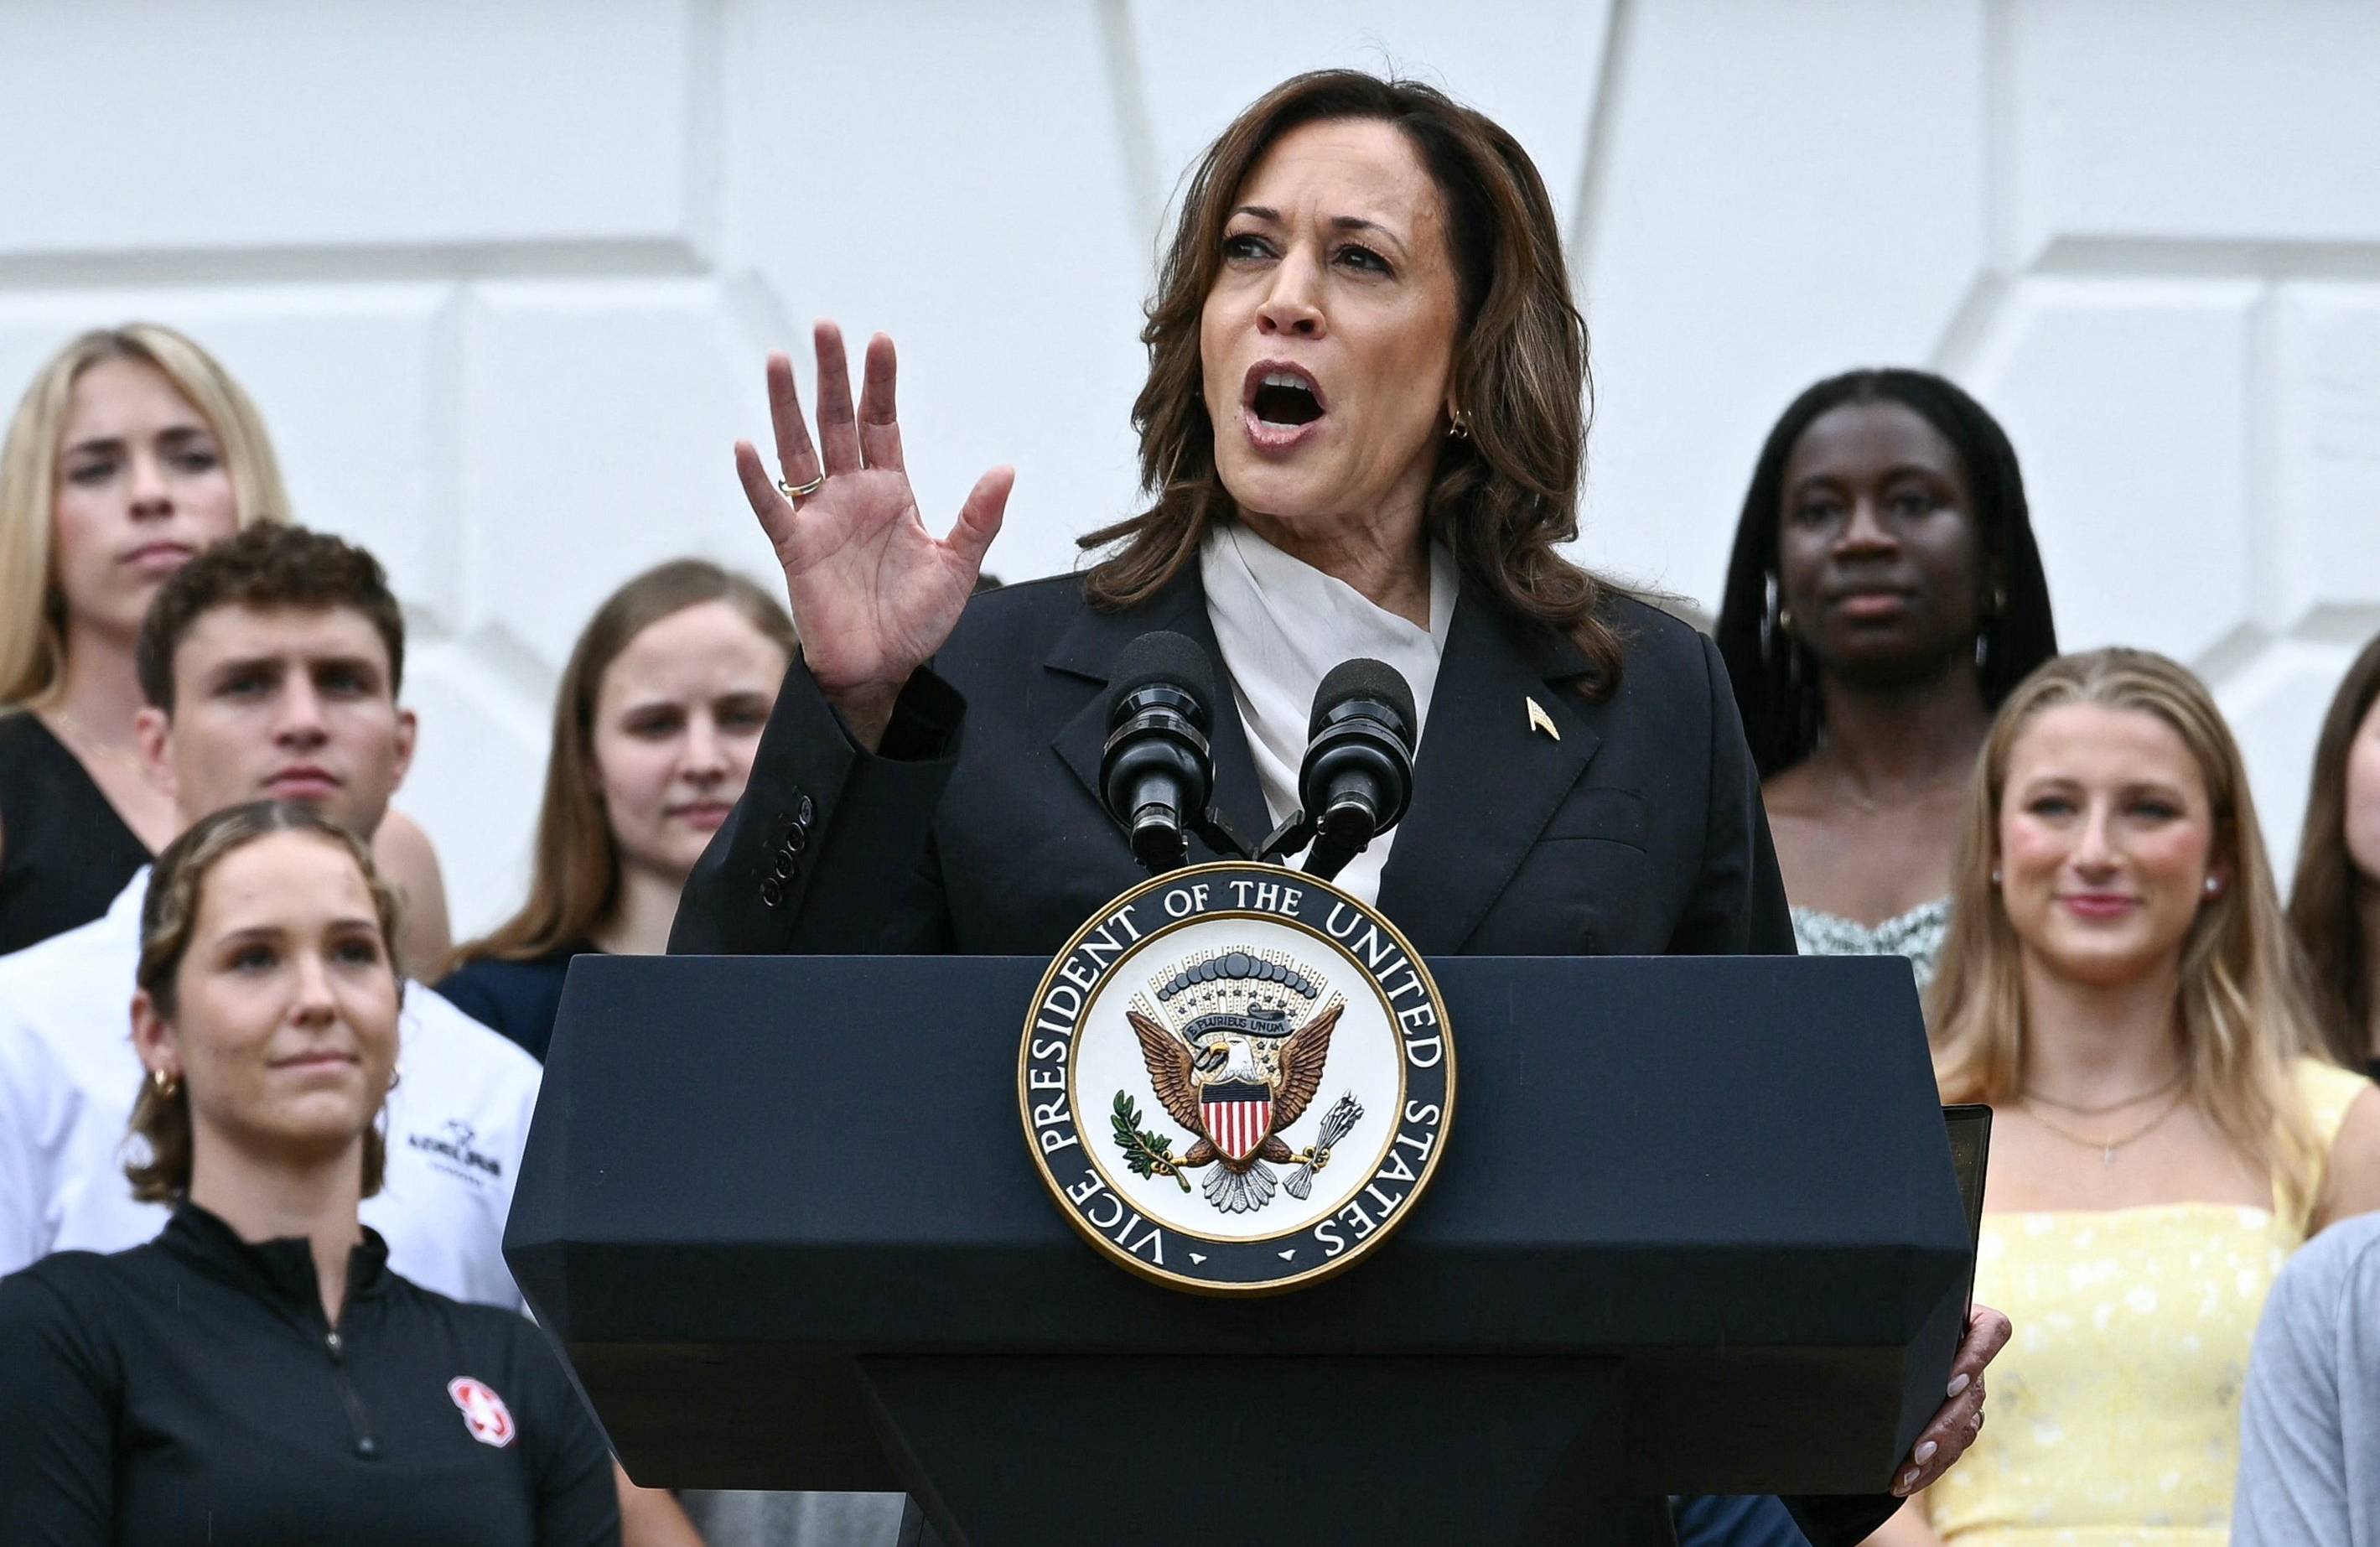 Kobieta o ciemnych włosach do ramion i ciemnej cerze (Kamala Harris) przemawia z podium z logo wiceprezydenta USA